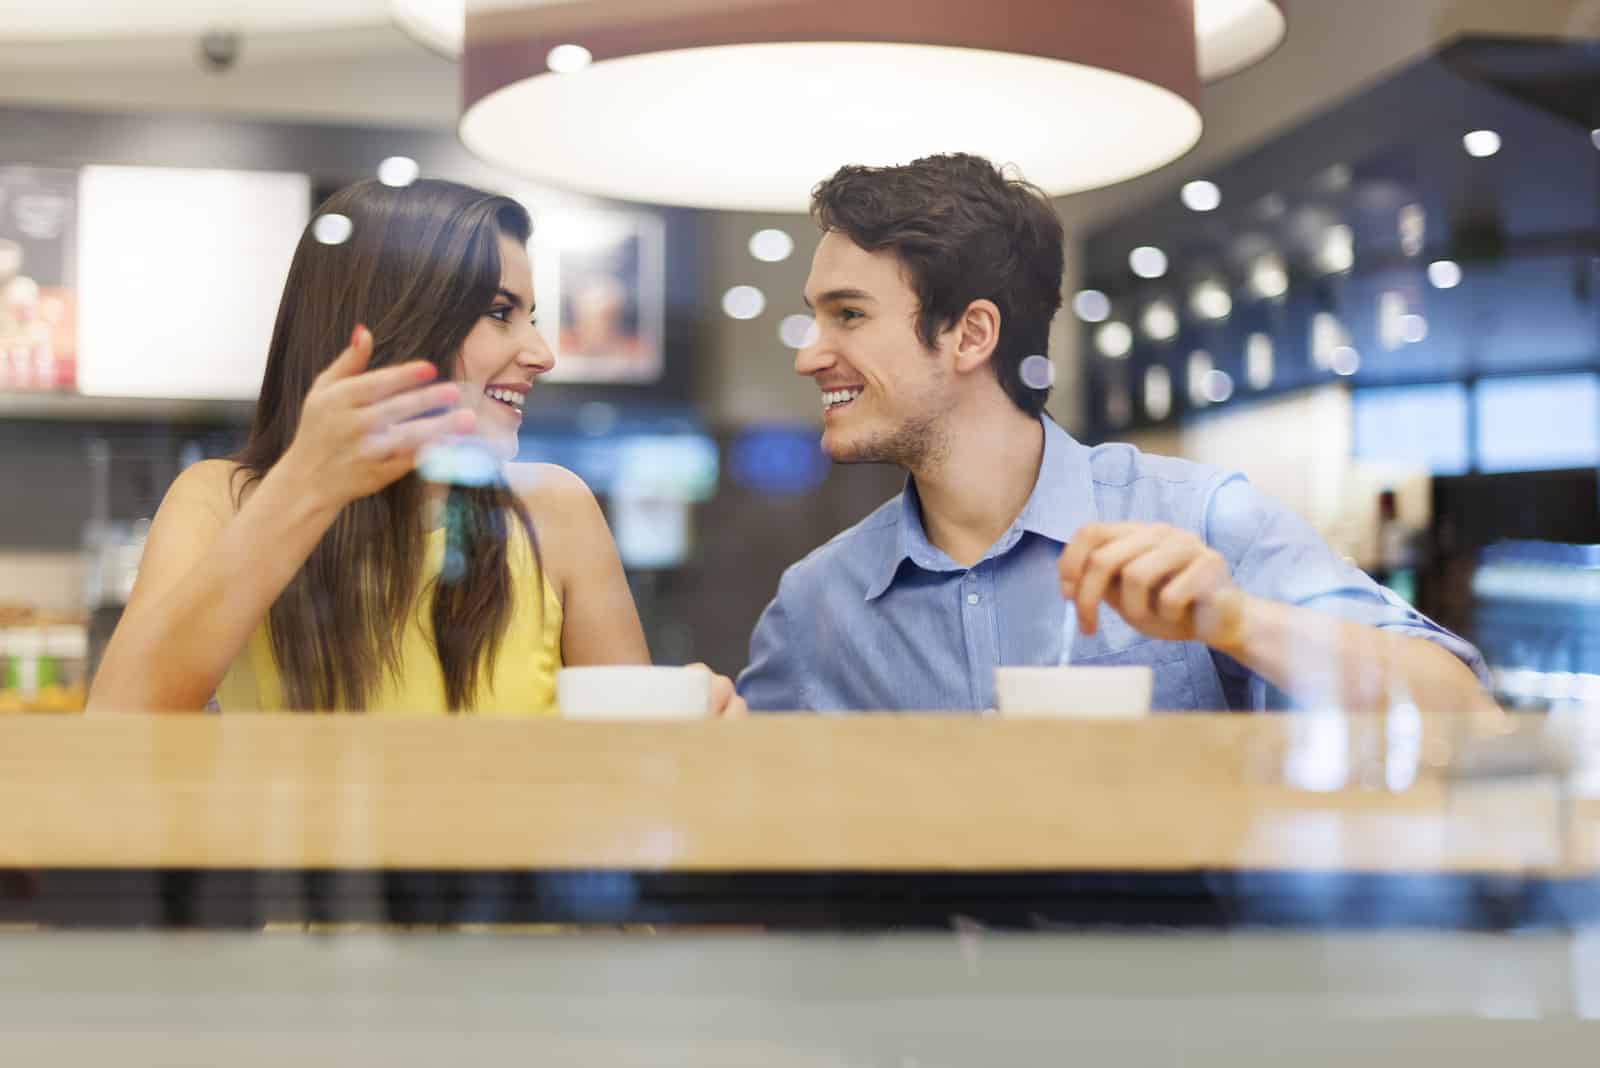 Ein Mann und eine Frau sitzen in einem Café und unterhalten sich